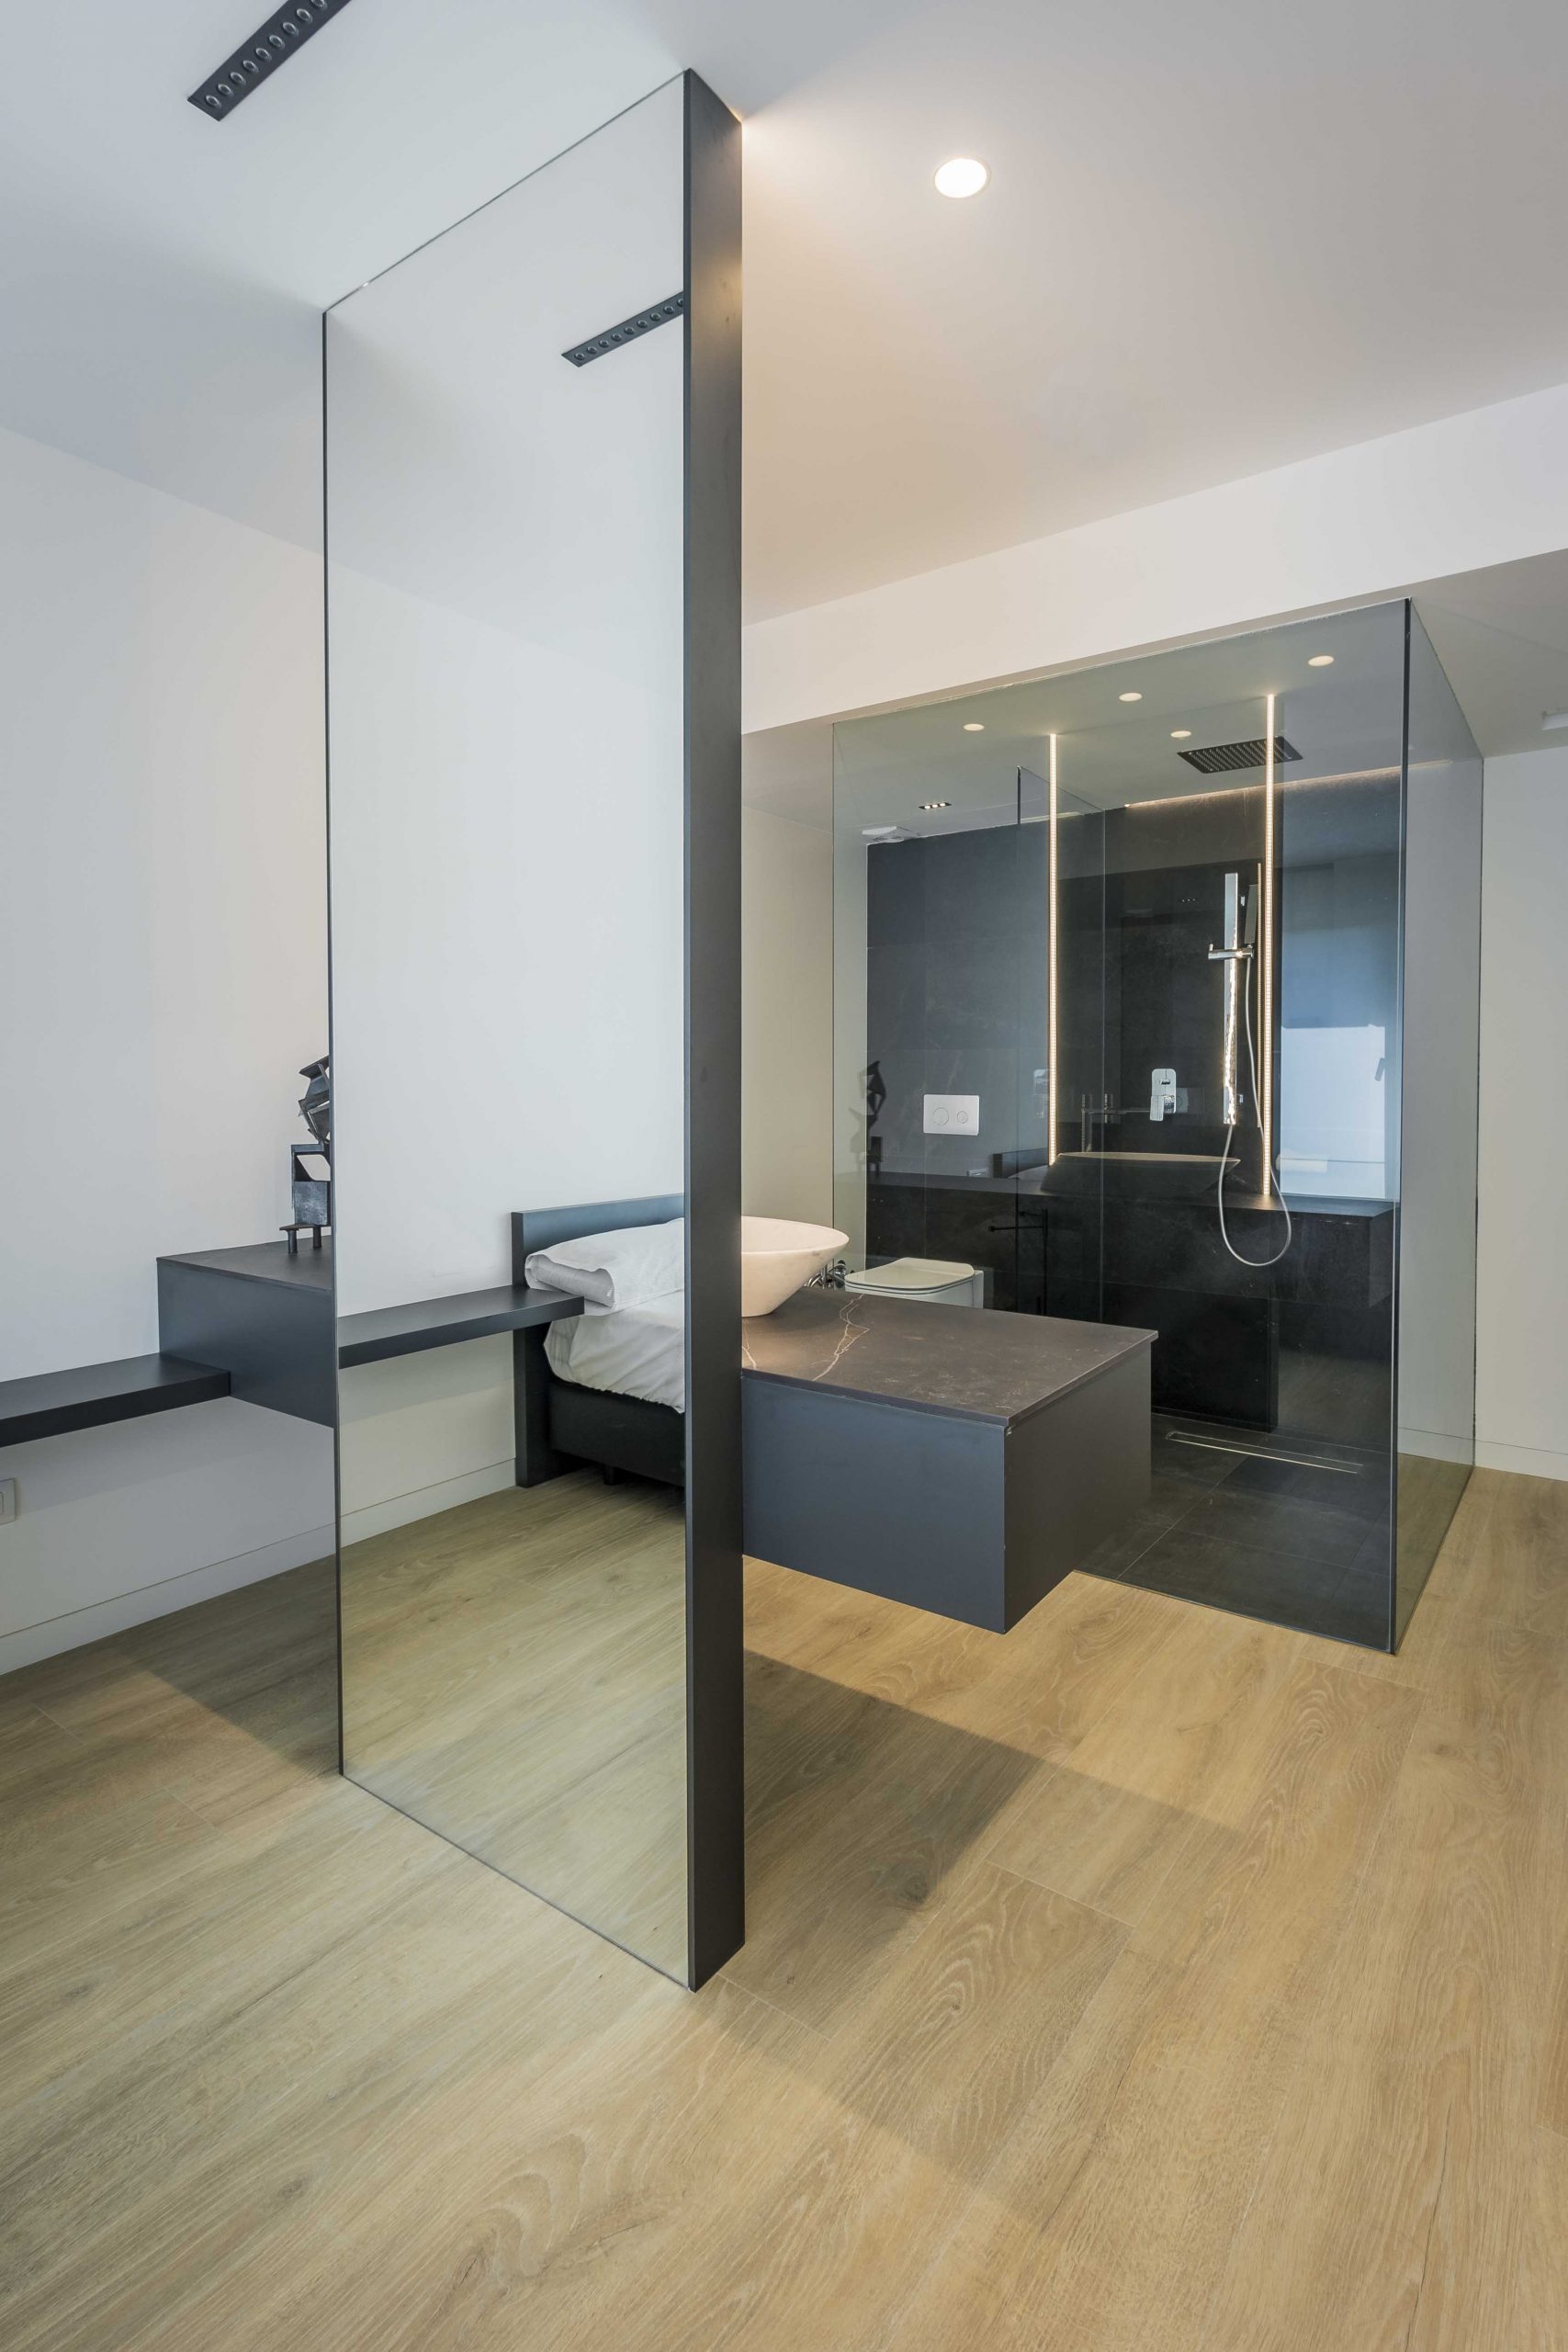 Baño-pared-cristal-moderno-minimalista-en-dormitorio-valencia-chiralt-arquitectos-valencia